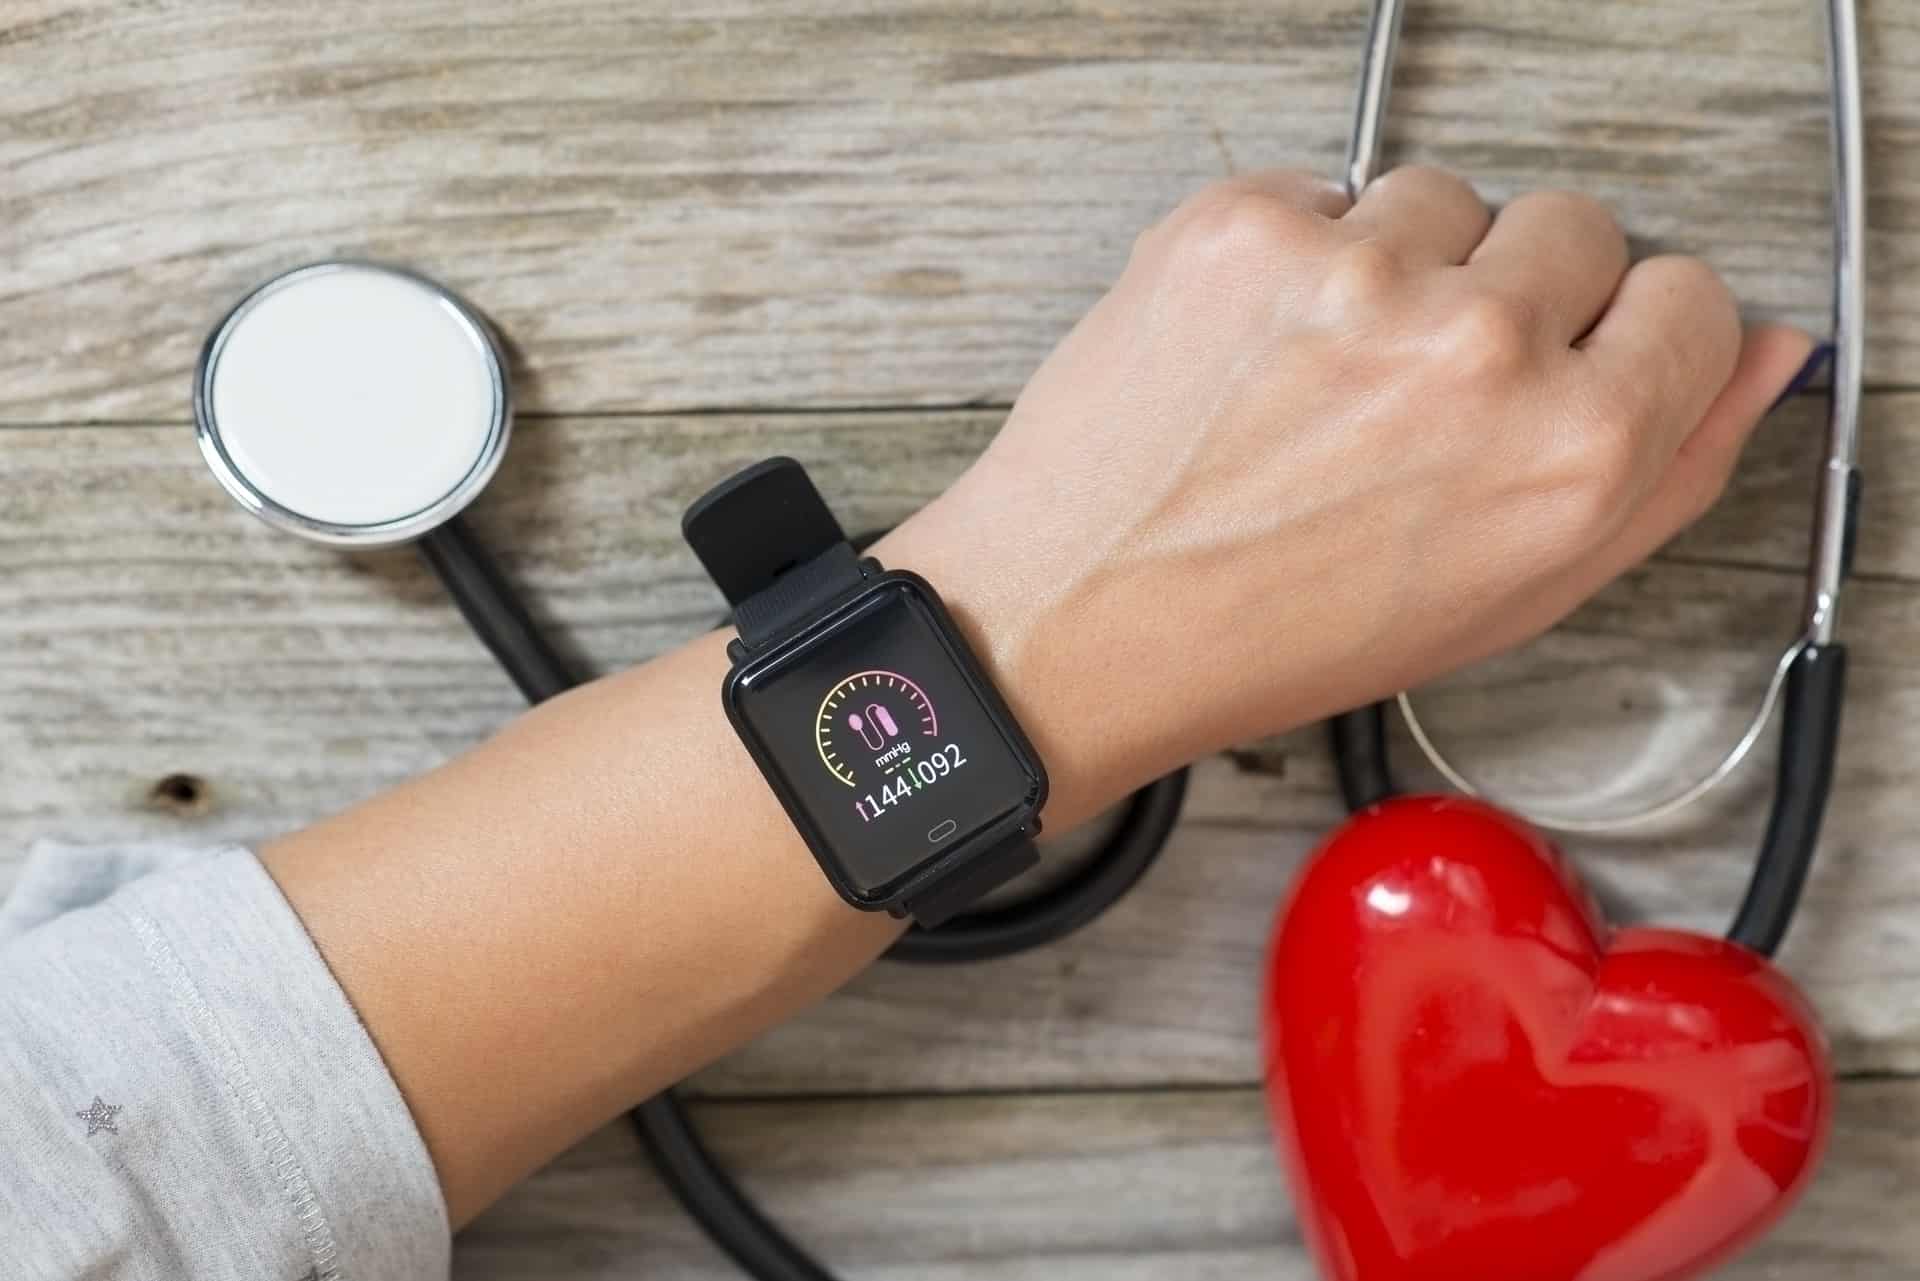 Pametni satovi postaju gotovo poput liječnika na vašem zapešću - mjere krvni tlak i rad srca